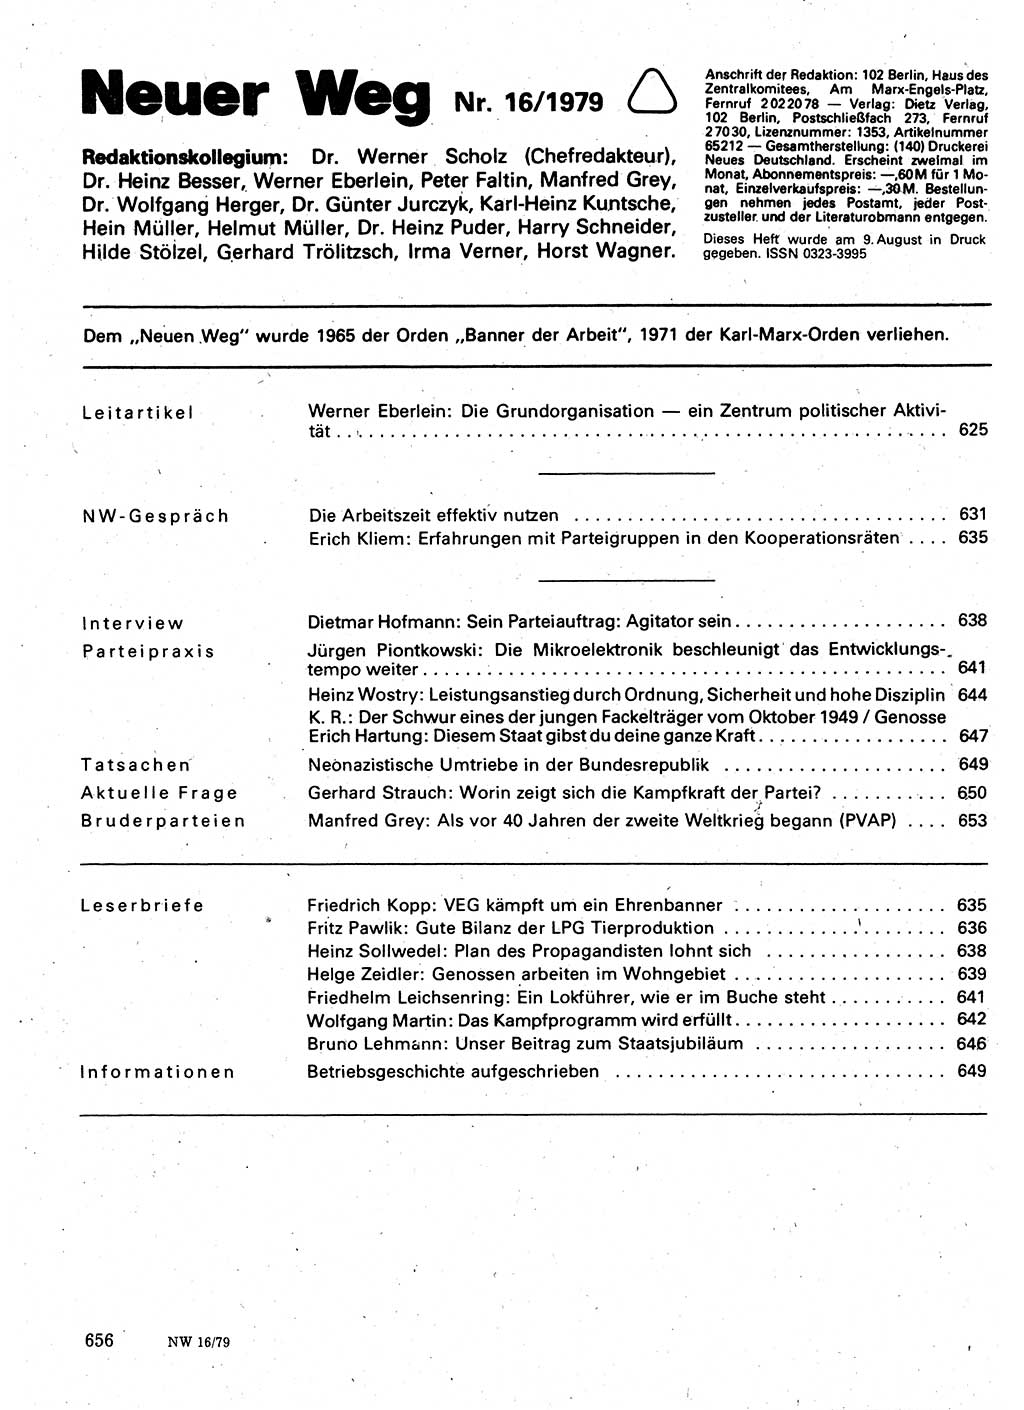 Neuer Weg (NW), Organ des Zentralkomitees (ZK) der SED (Sozialistische Einheitspartei Deutschlands) für Fragen des Parteilebens, 34. Jahrgang [Deutsche Demokratische Republik (DDR)] 1979, Seite 656 (NW ZK SED DDR 1979, S. 656)